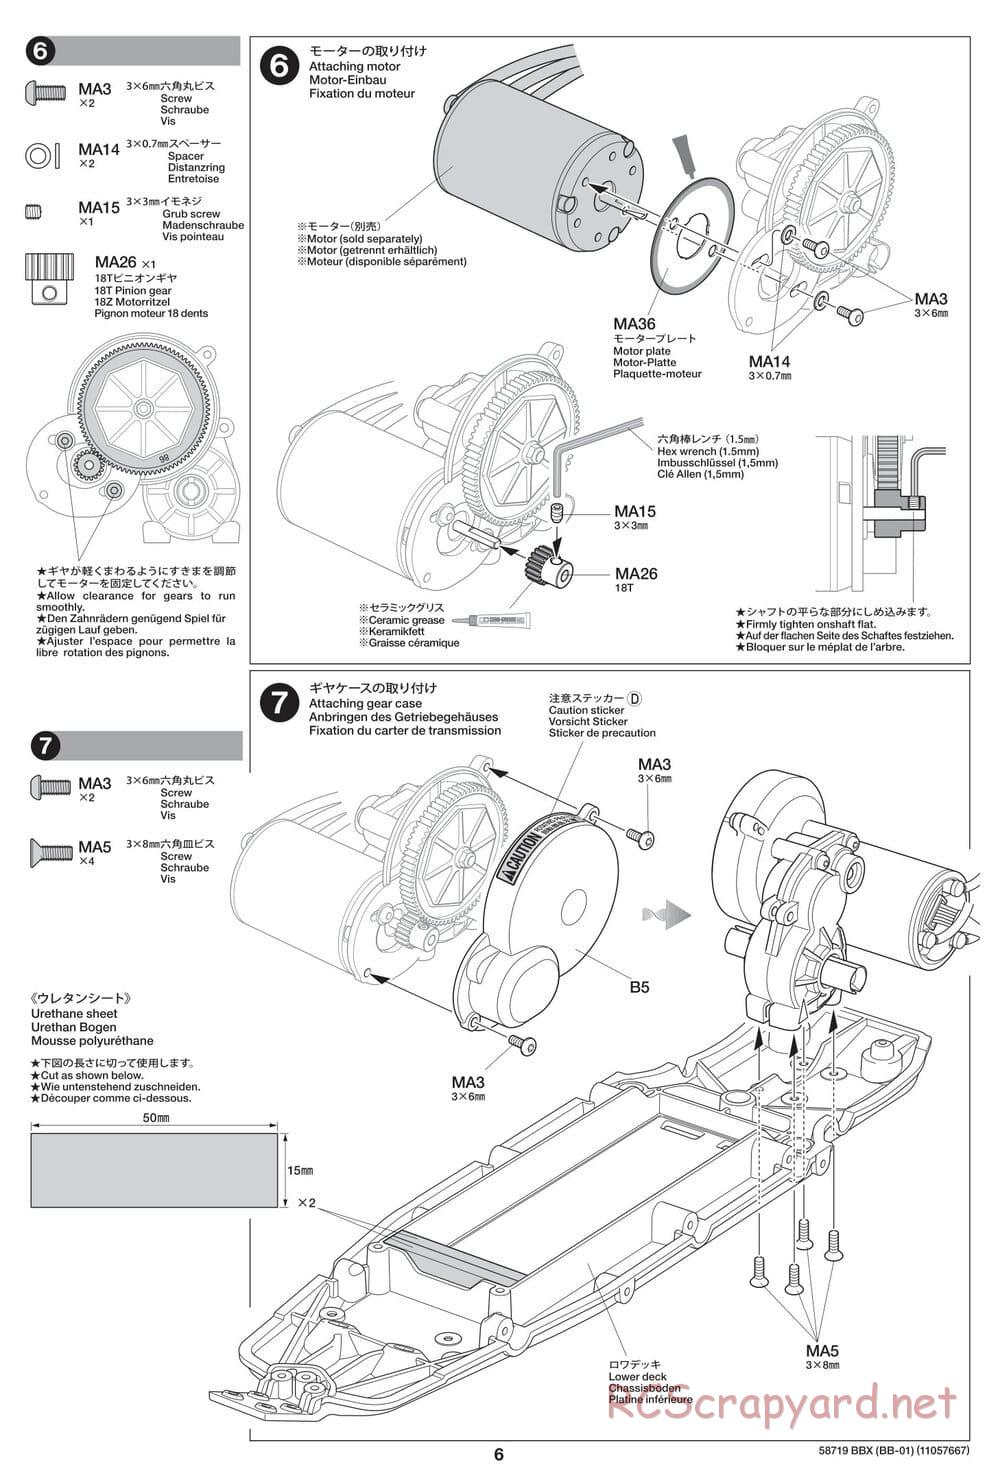 Tamiya - BBX - BB-01 Chassis - Manual - Page 6